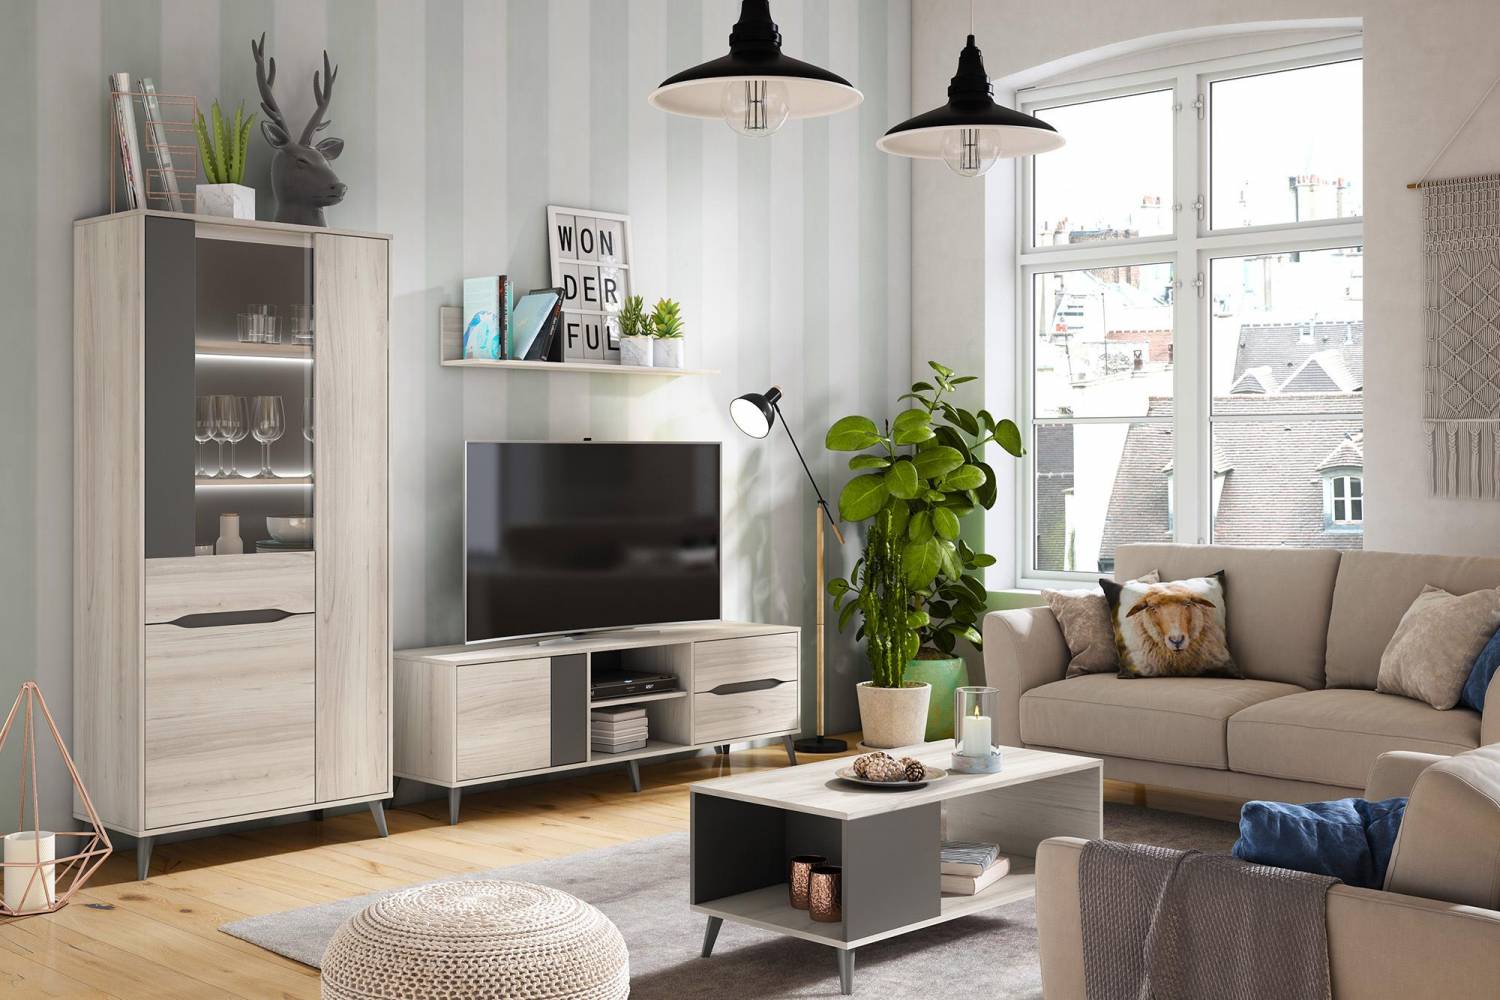 Dale un nuevo aire a tu hogar: renueva los muebles sin incurrir en un gasto excesivo 1